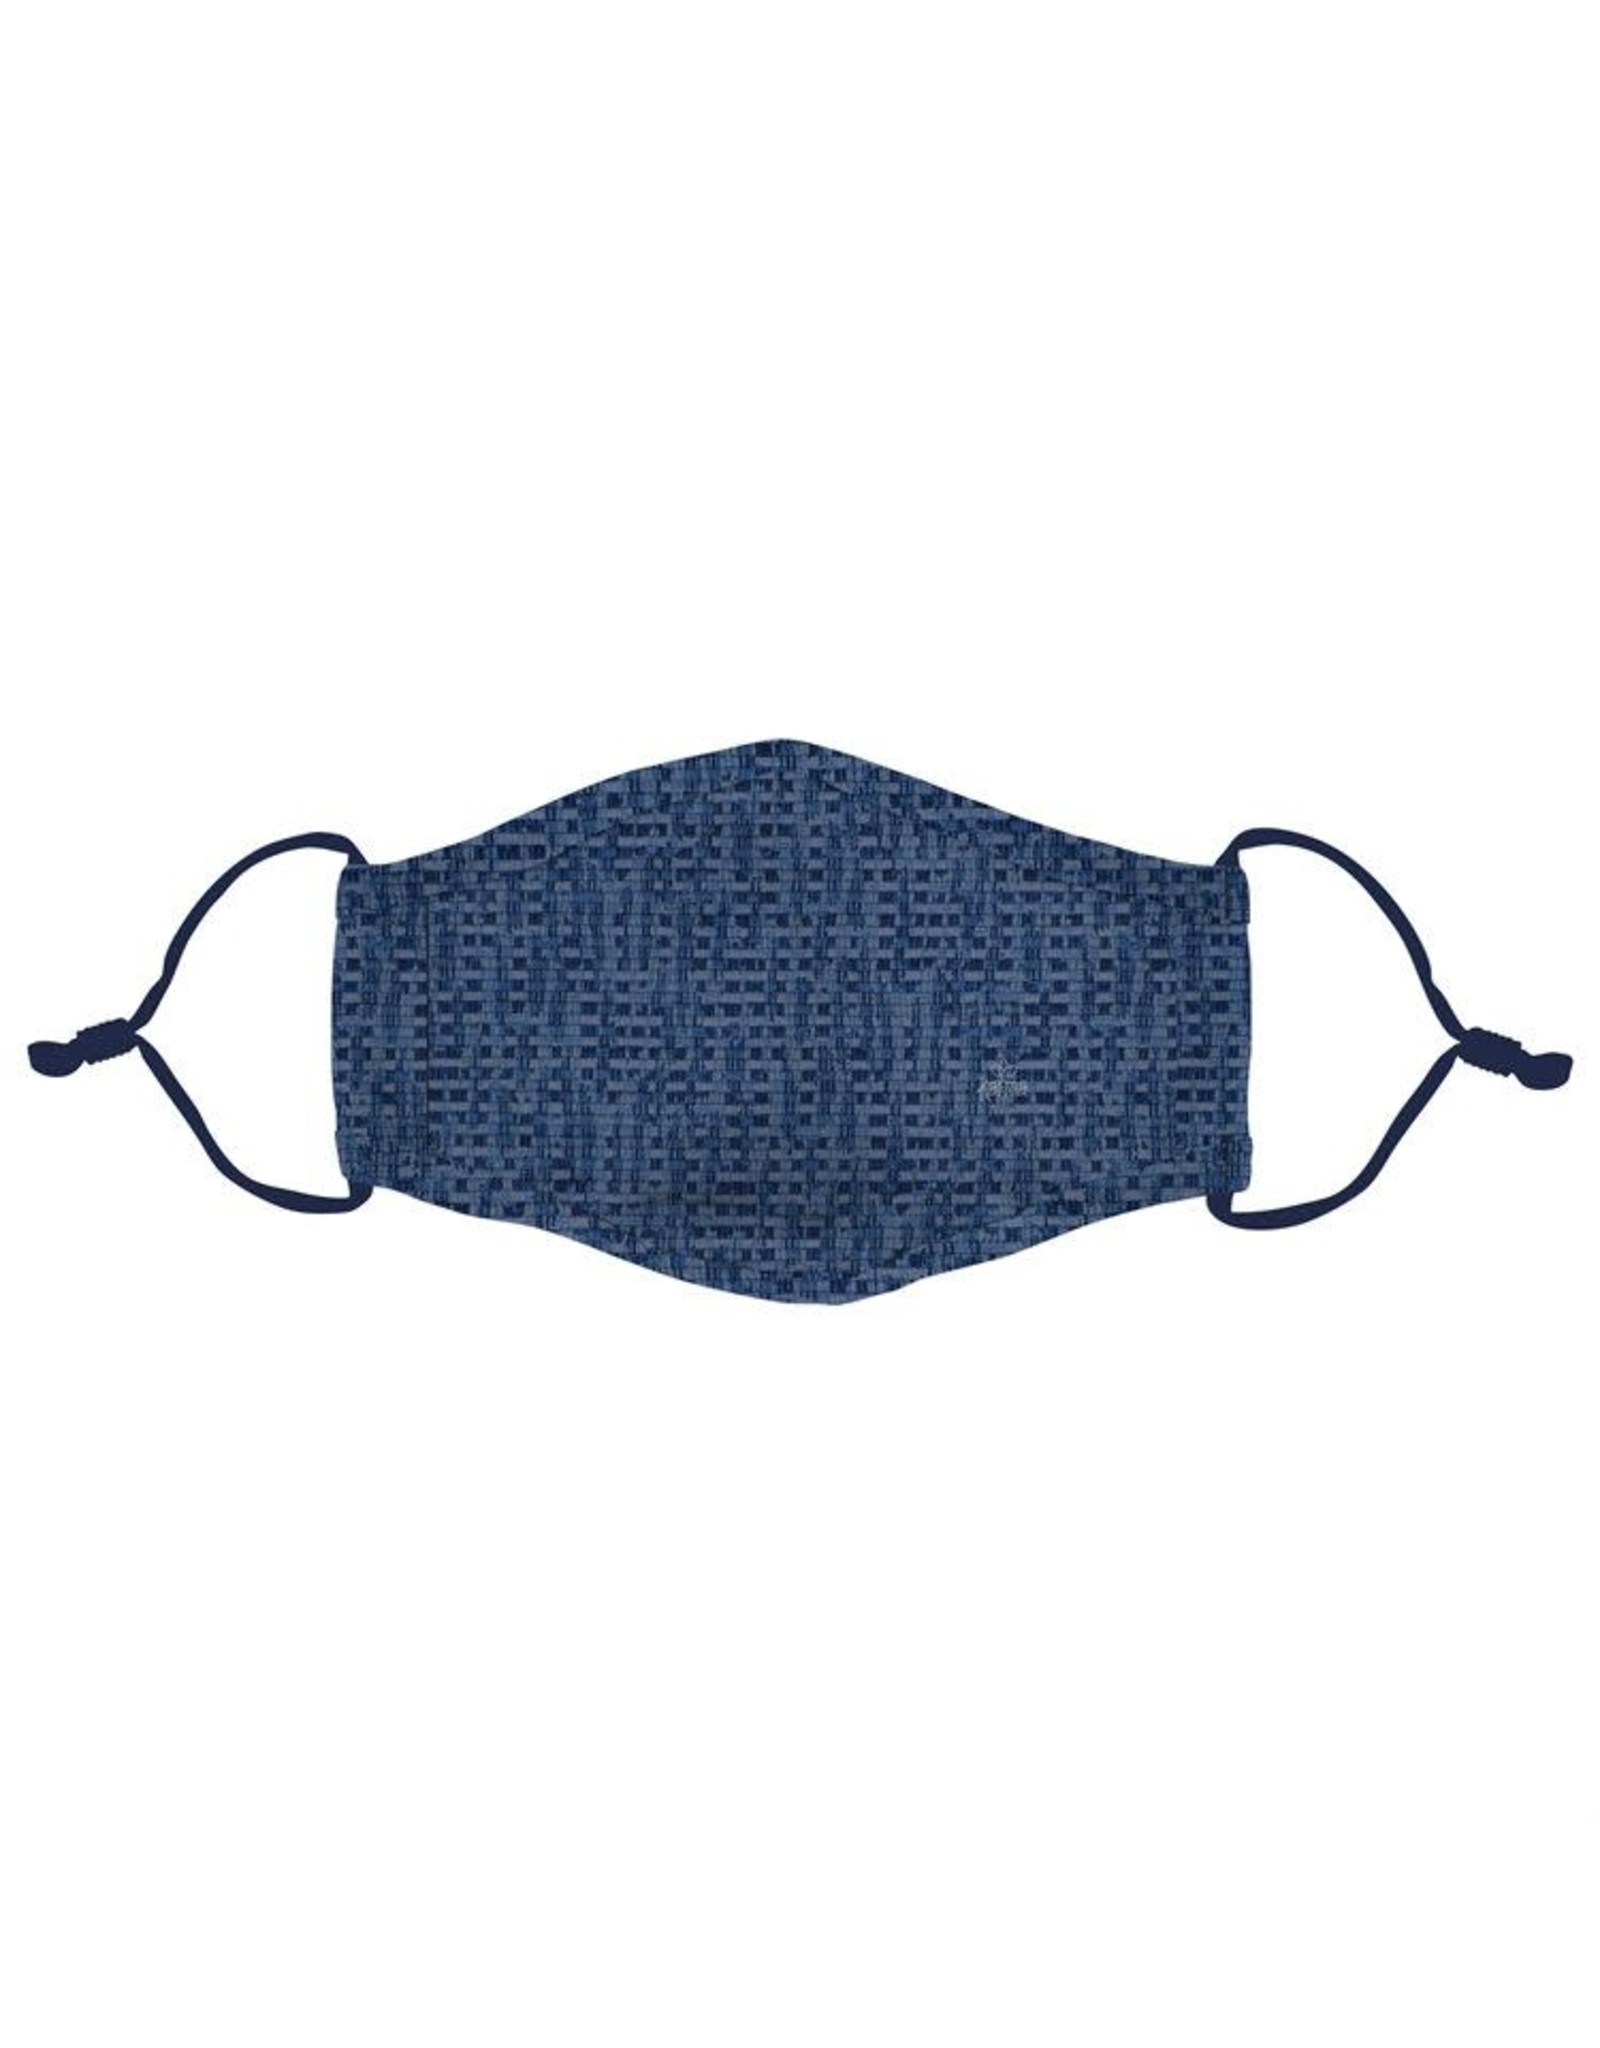 Ivystone Poly Face Mask W/Filter Pocket-Blue Basket Weave